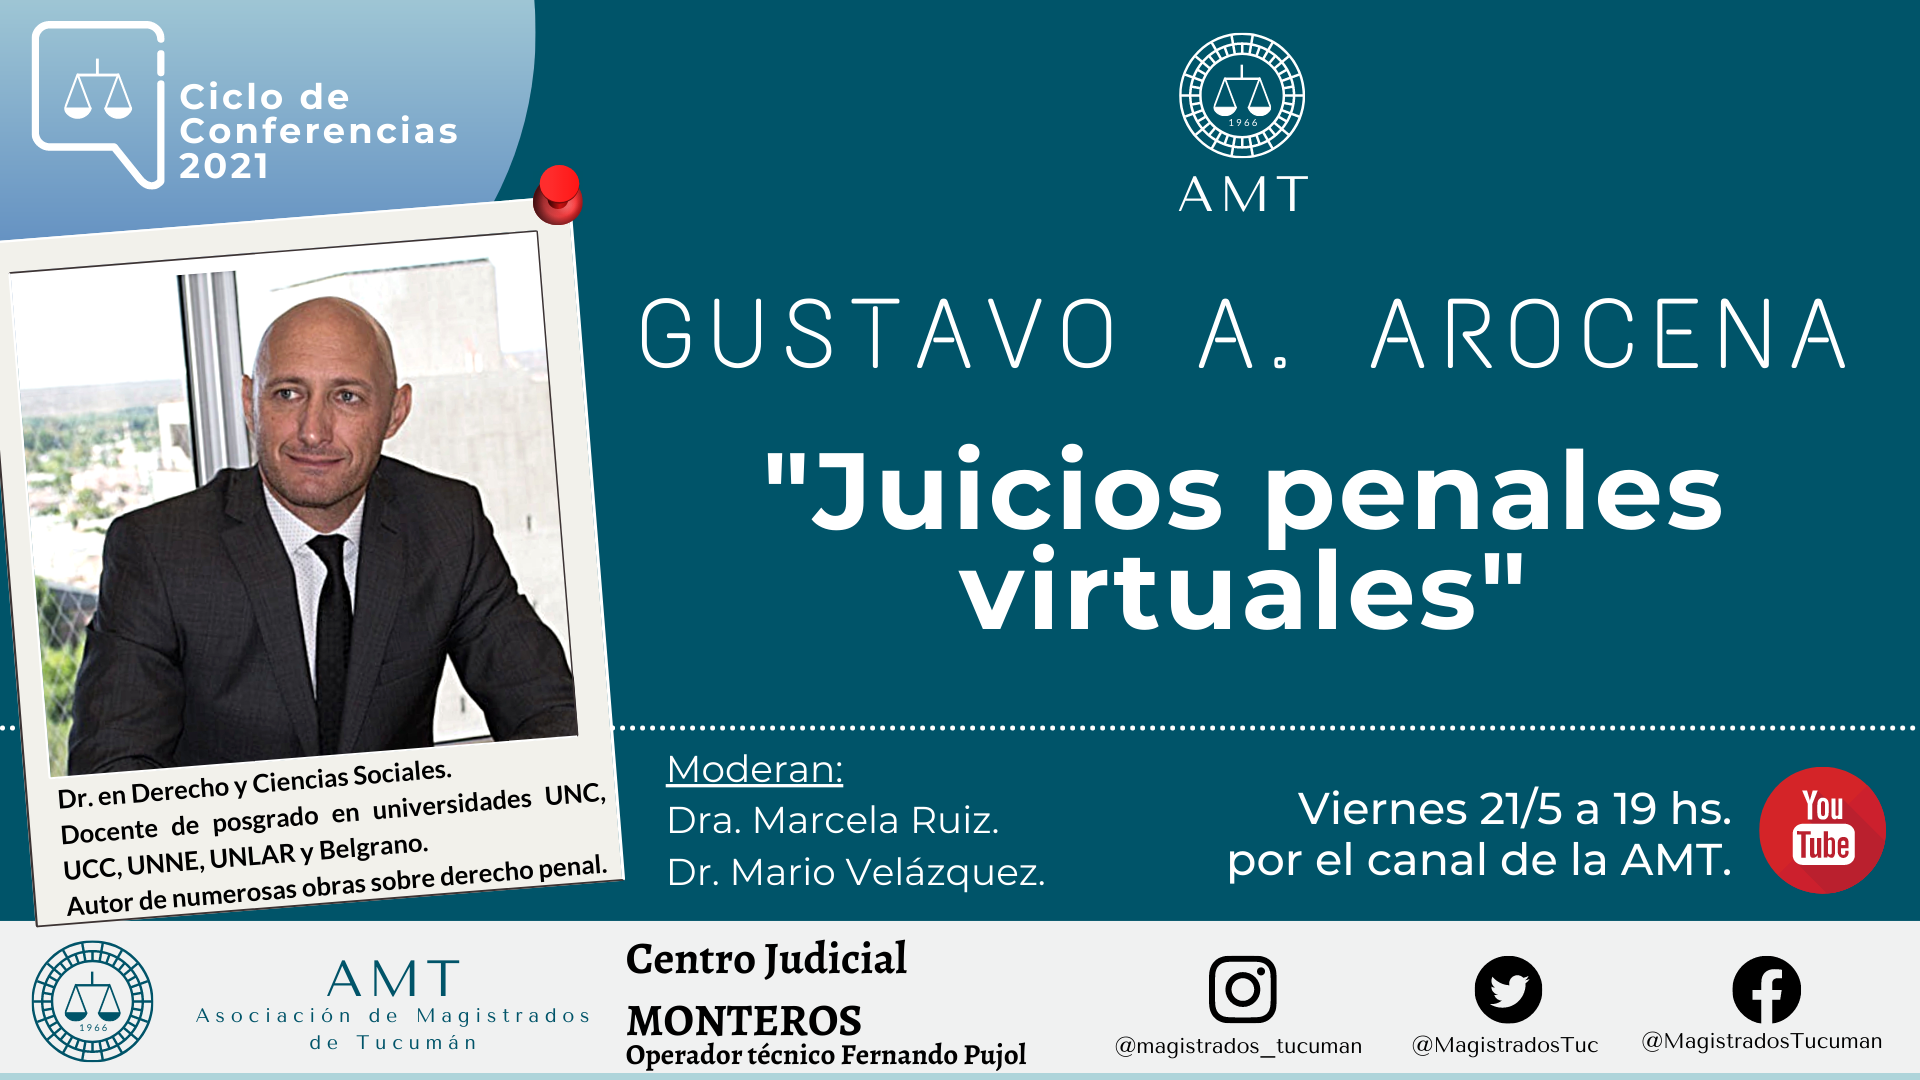 Vuelva a ver la conferencia de Gustavo Arocena «Juicios penales virtuales»